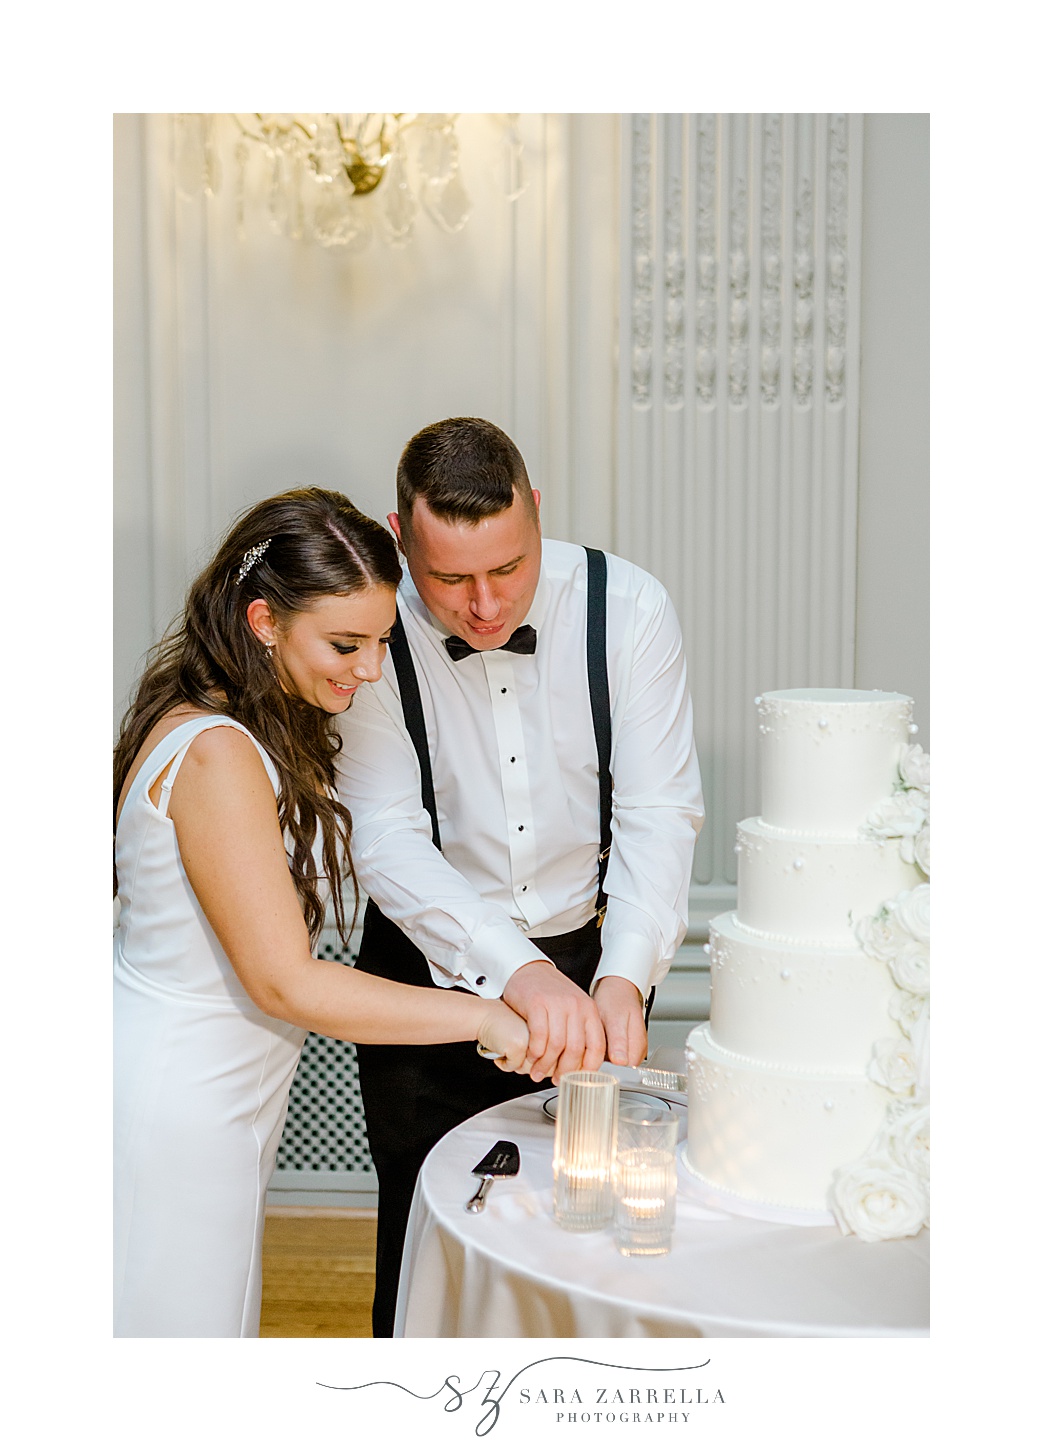 newlyweds cut wedding cake during Newport RI wedding reception